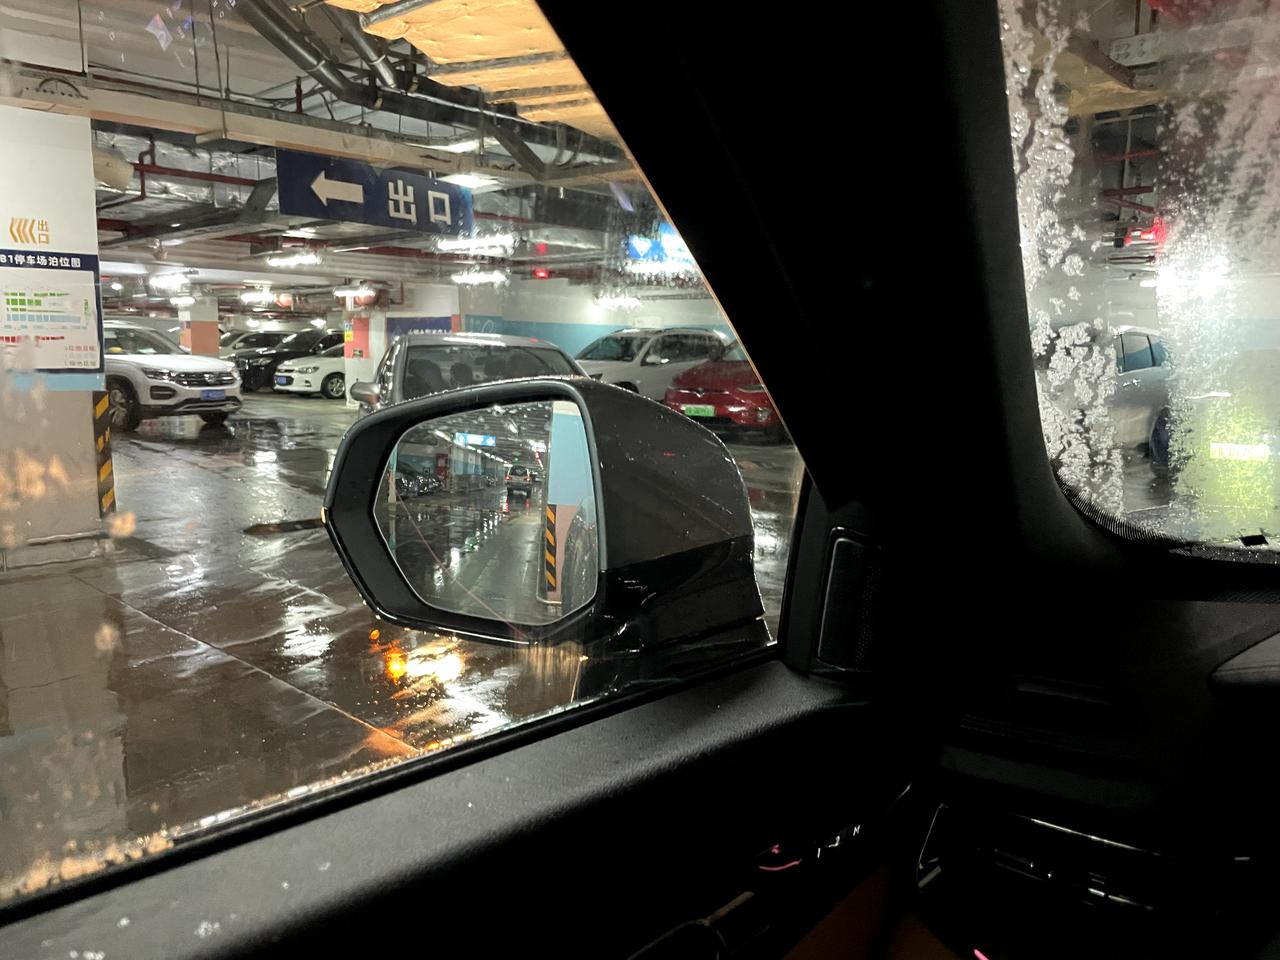 领克09 天热，下雨，进了地下停车场，左边的玻璃没有雾气，右边根本看不到后视镜。怎么破